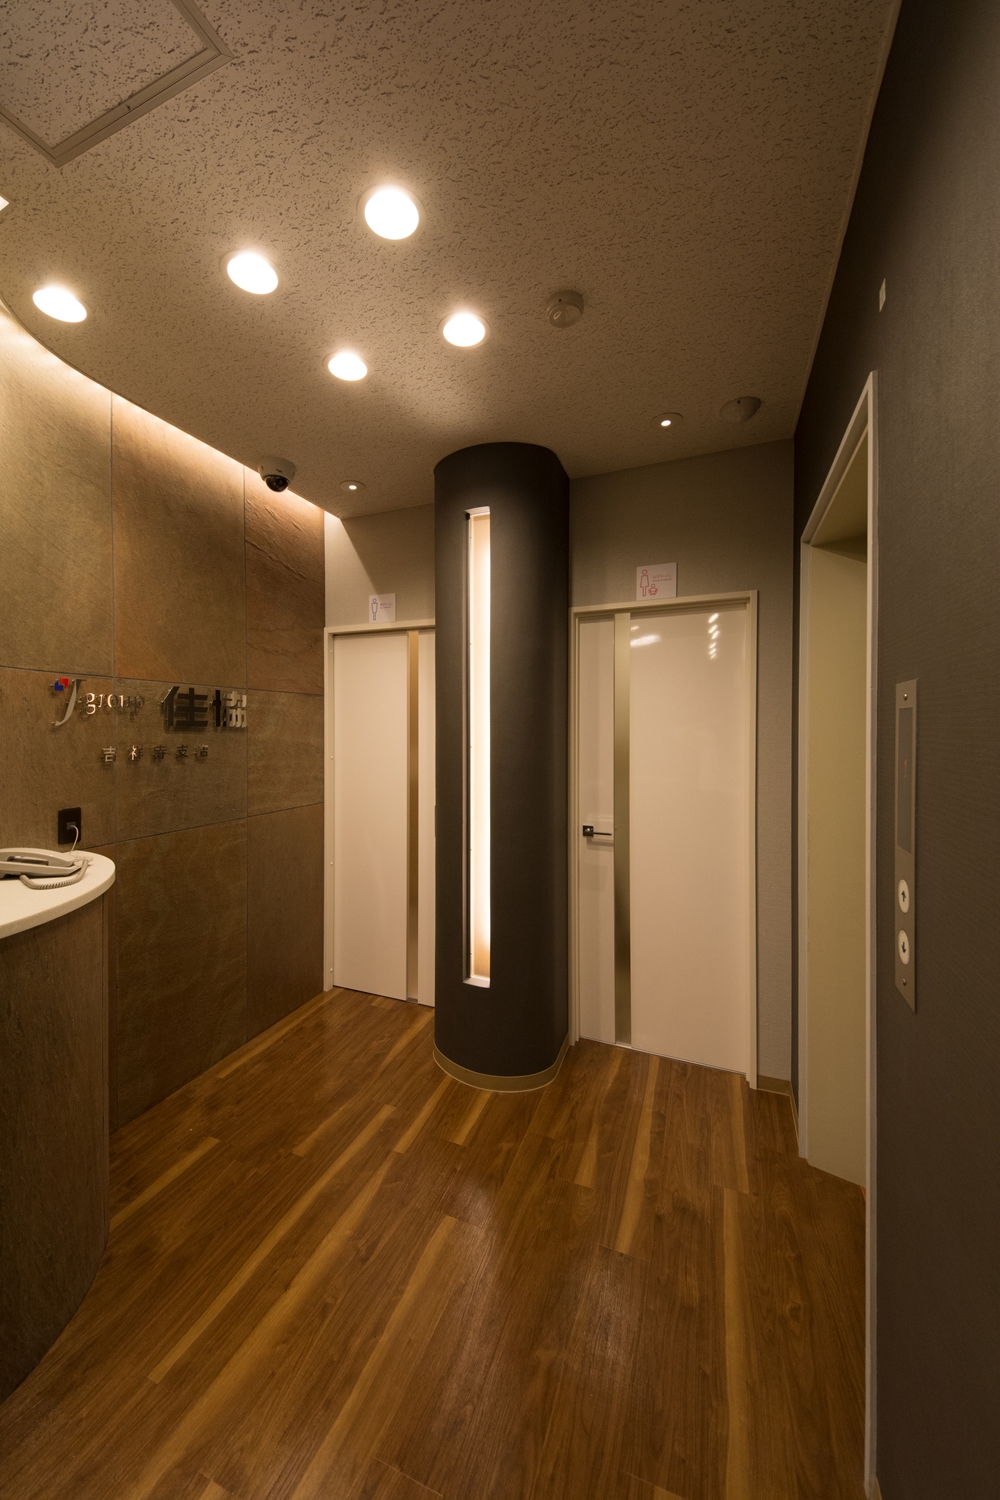 石材を使用した壁と間接照明が空間を彩る、シックで高級感のあるエントランス。